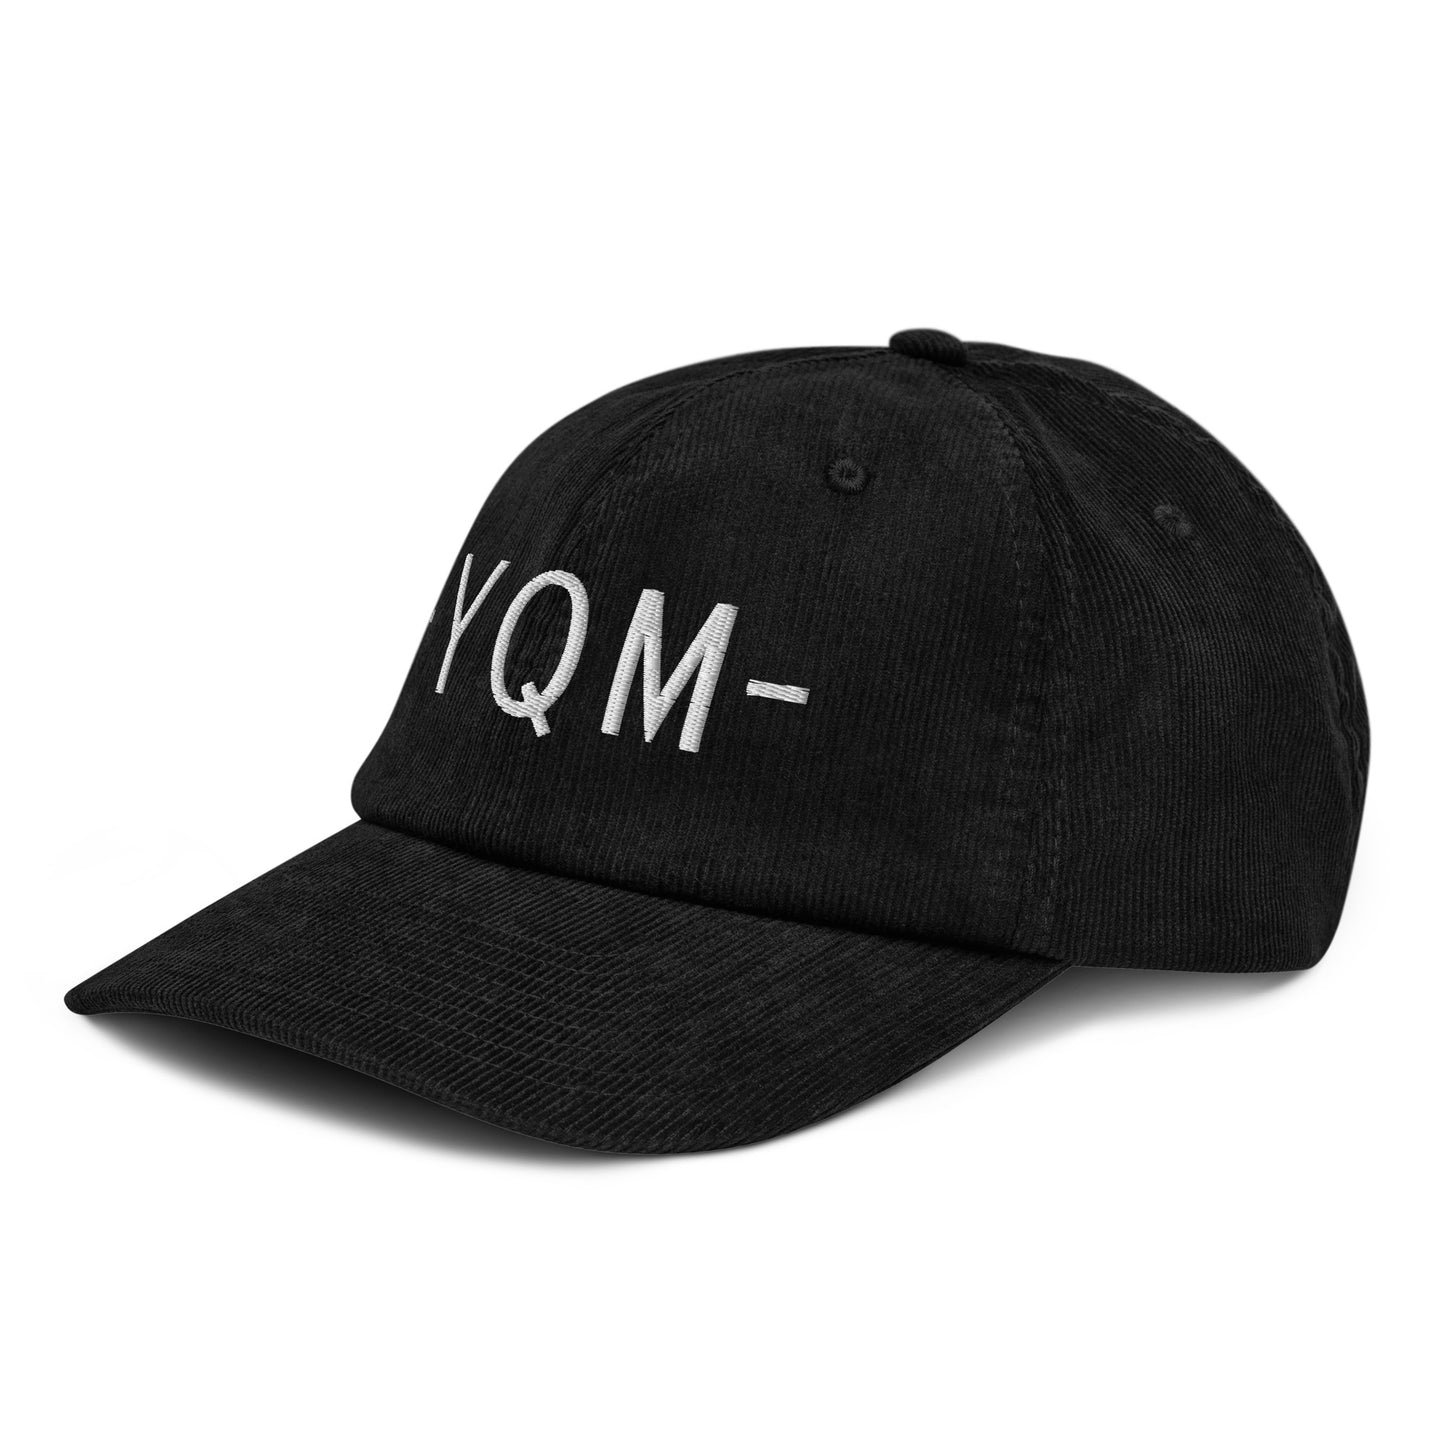 Souvenir Corduroy Hat - White • YQM Moncton • YHM Designs - Image 14